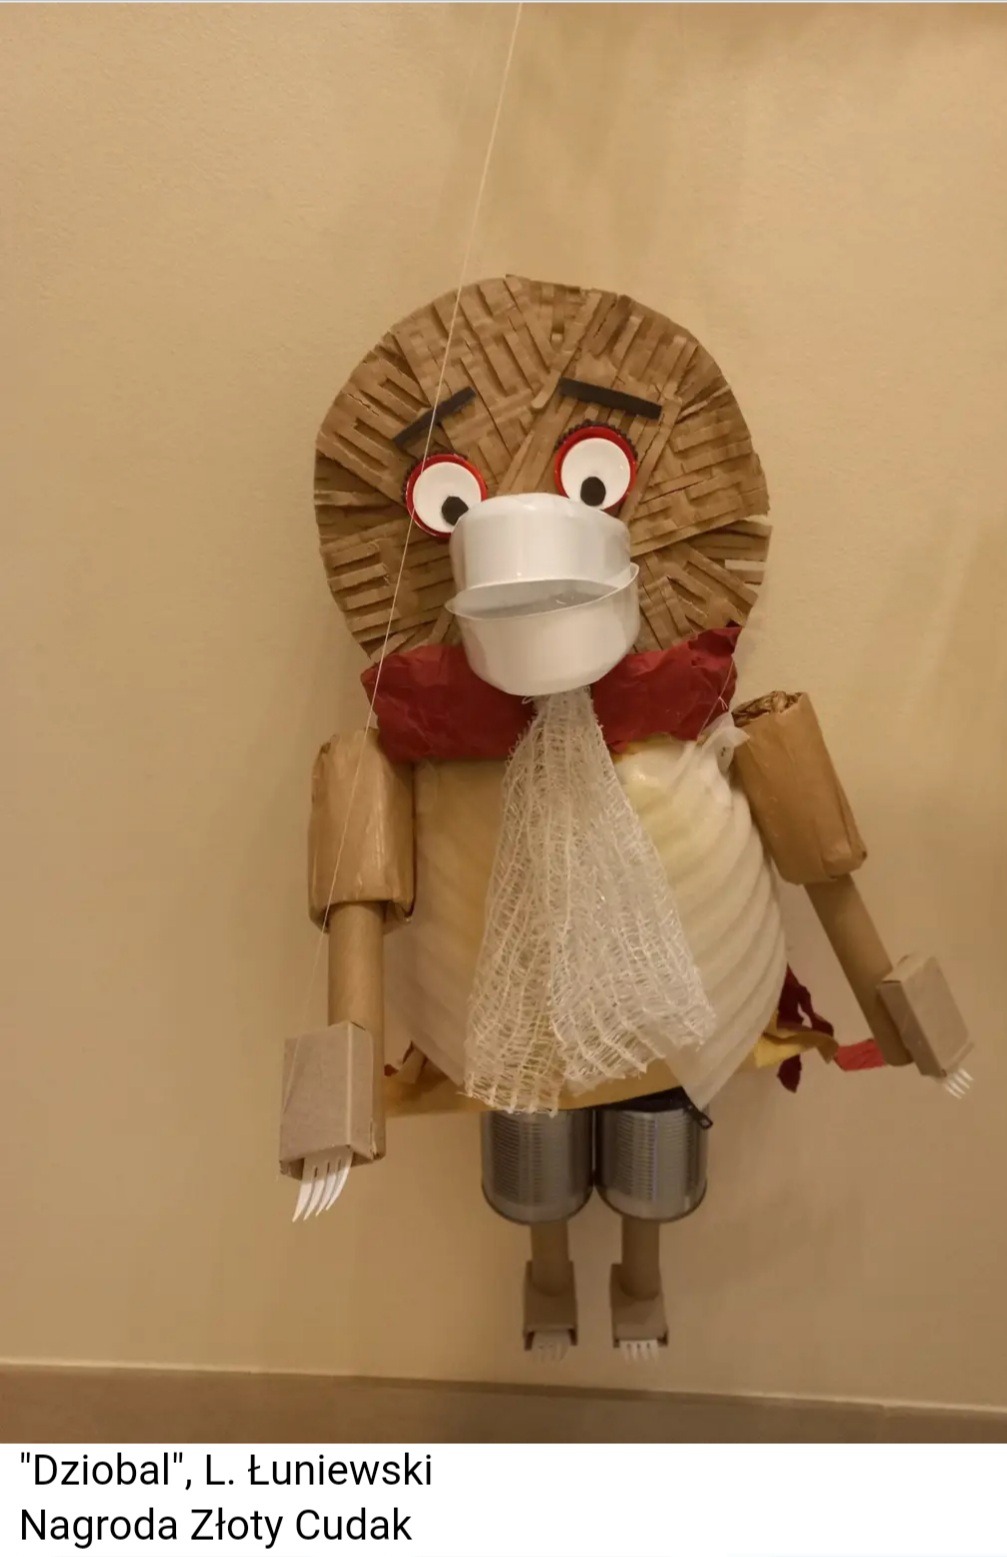 Marionetka "Dziobal" wykonana z odpadów ekologicznych. Nagroda Złoty Cudak"